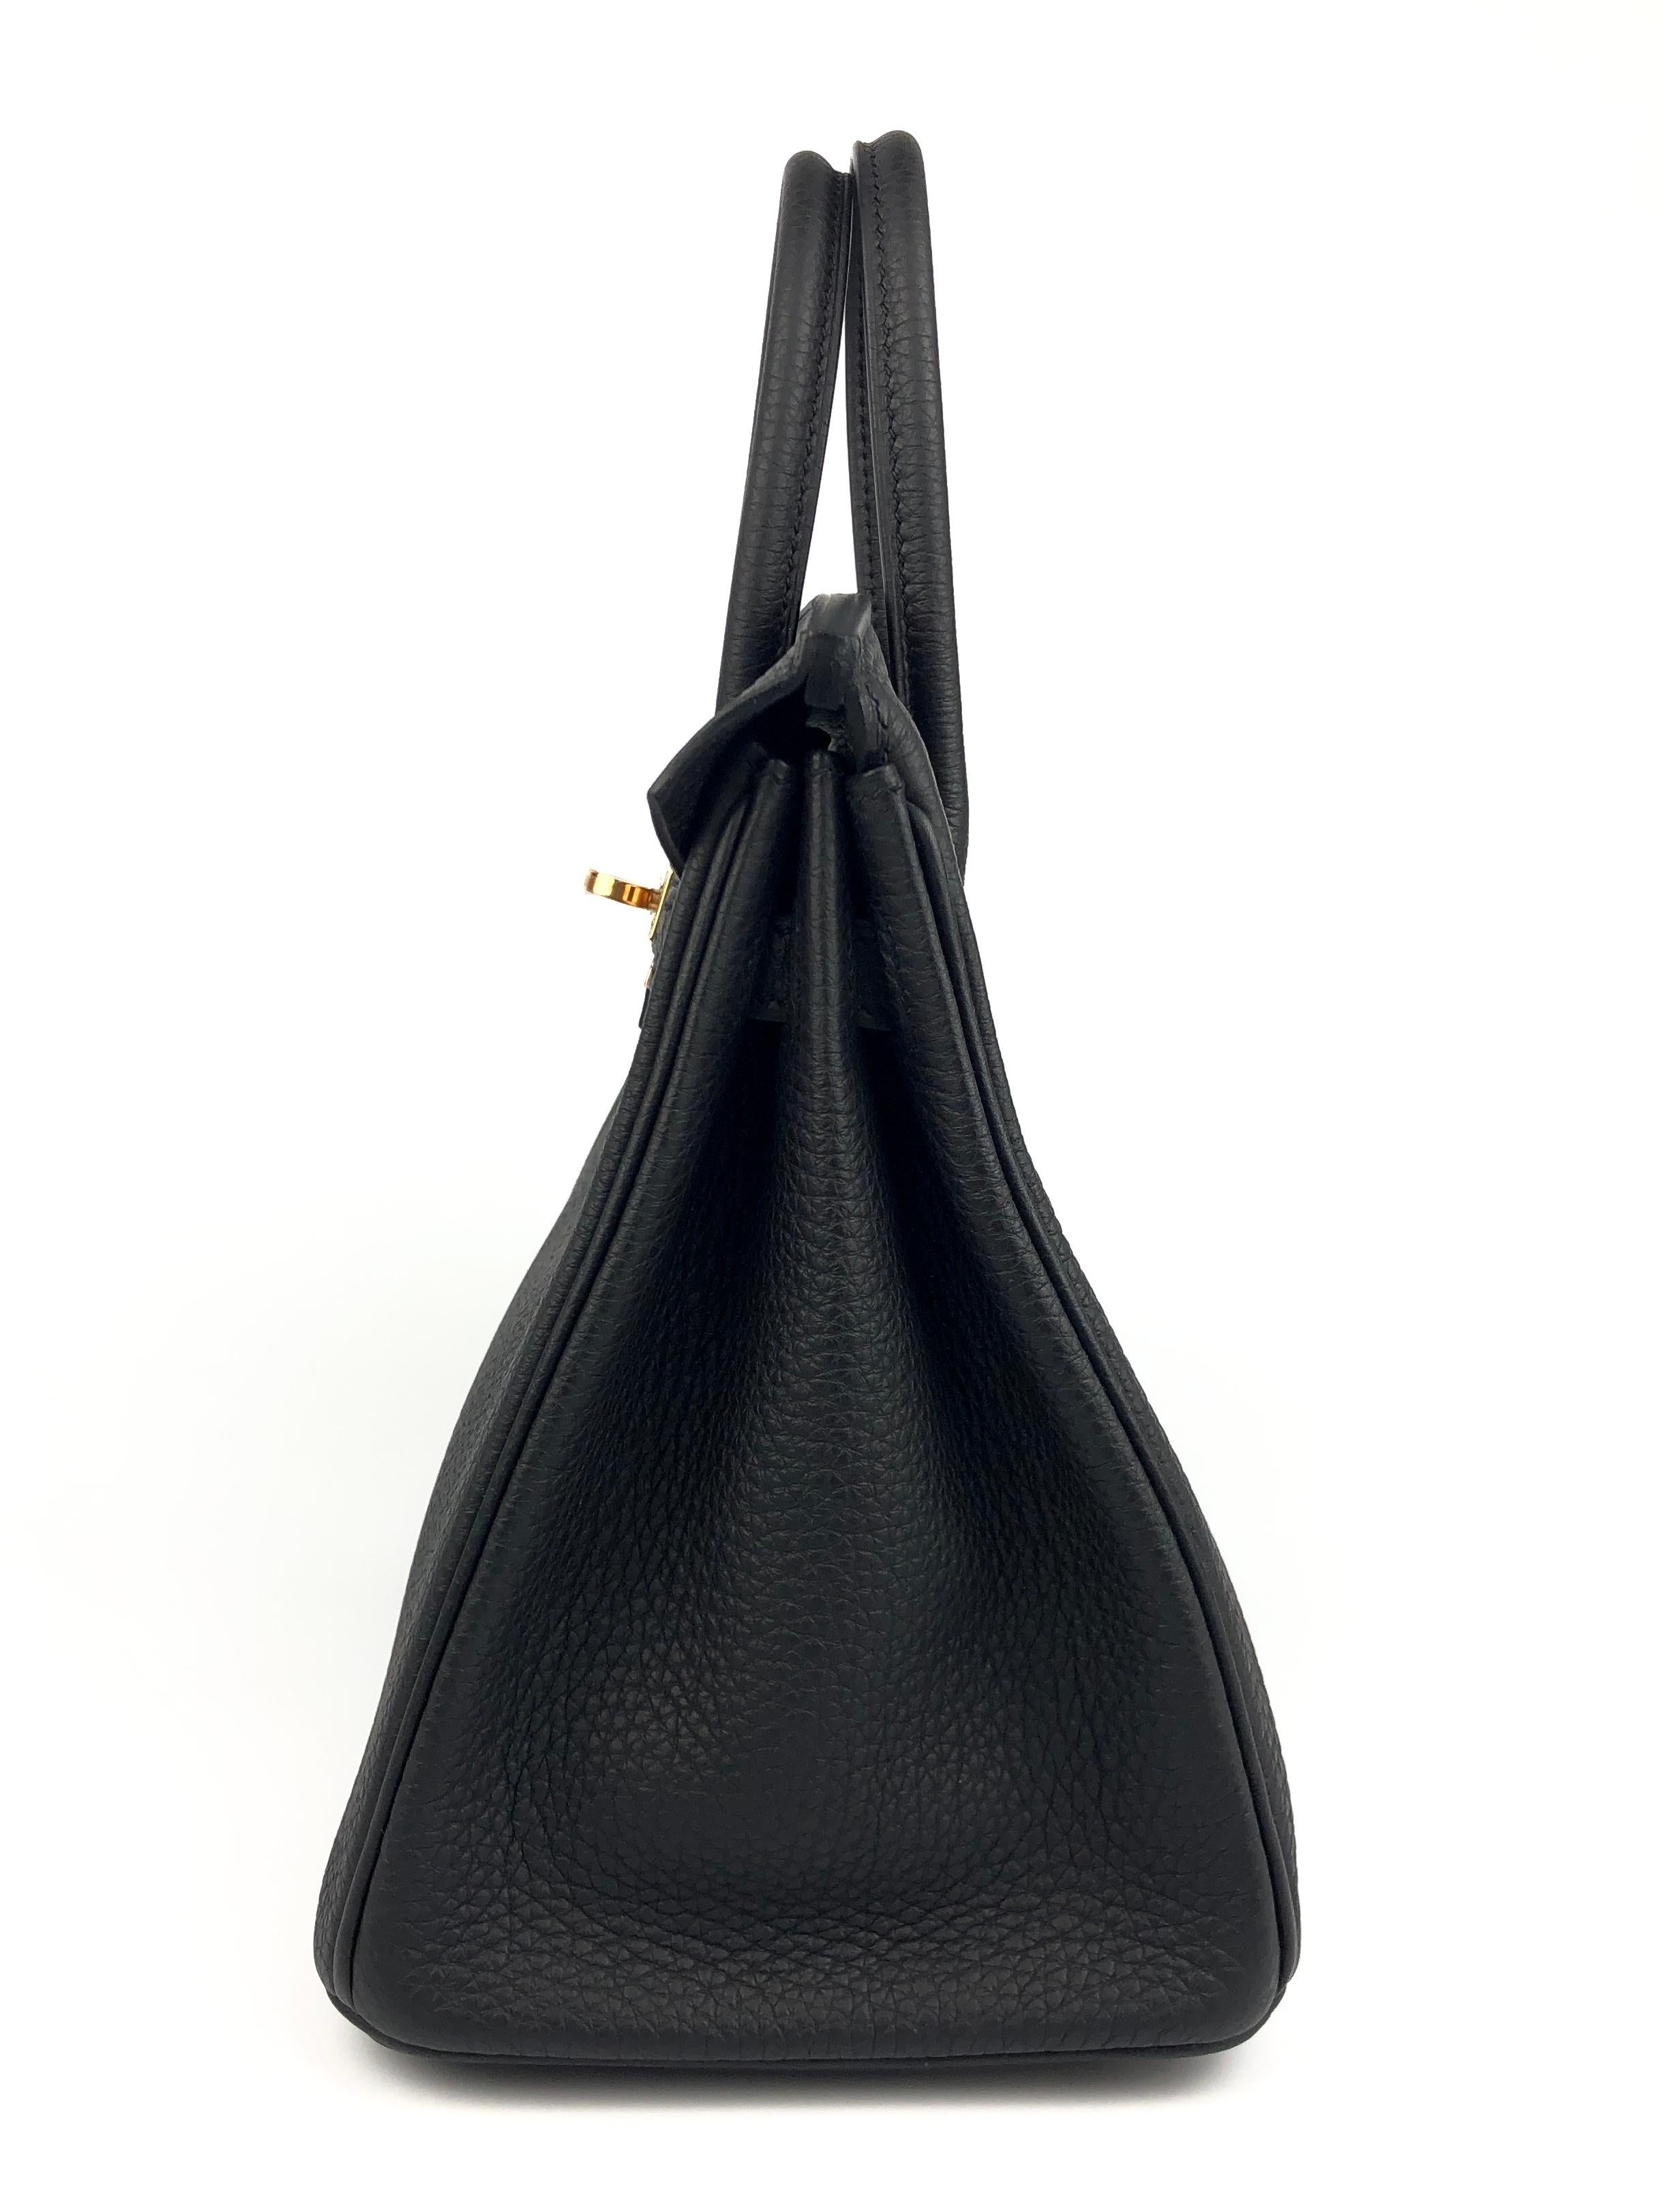 Hermes Birkin 25 Black Noir Togo Leather Handbag Rose Gold Hardware  1